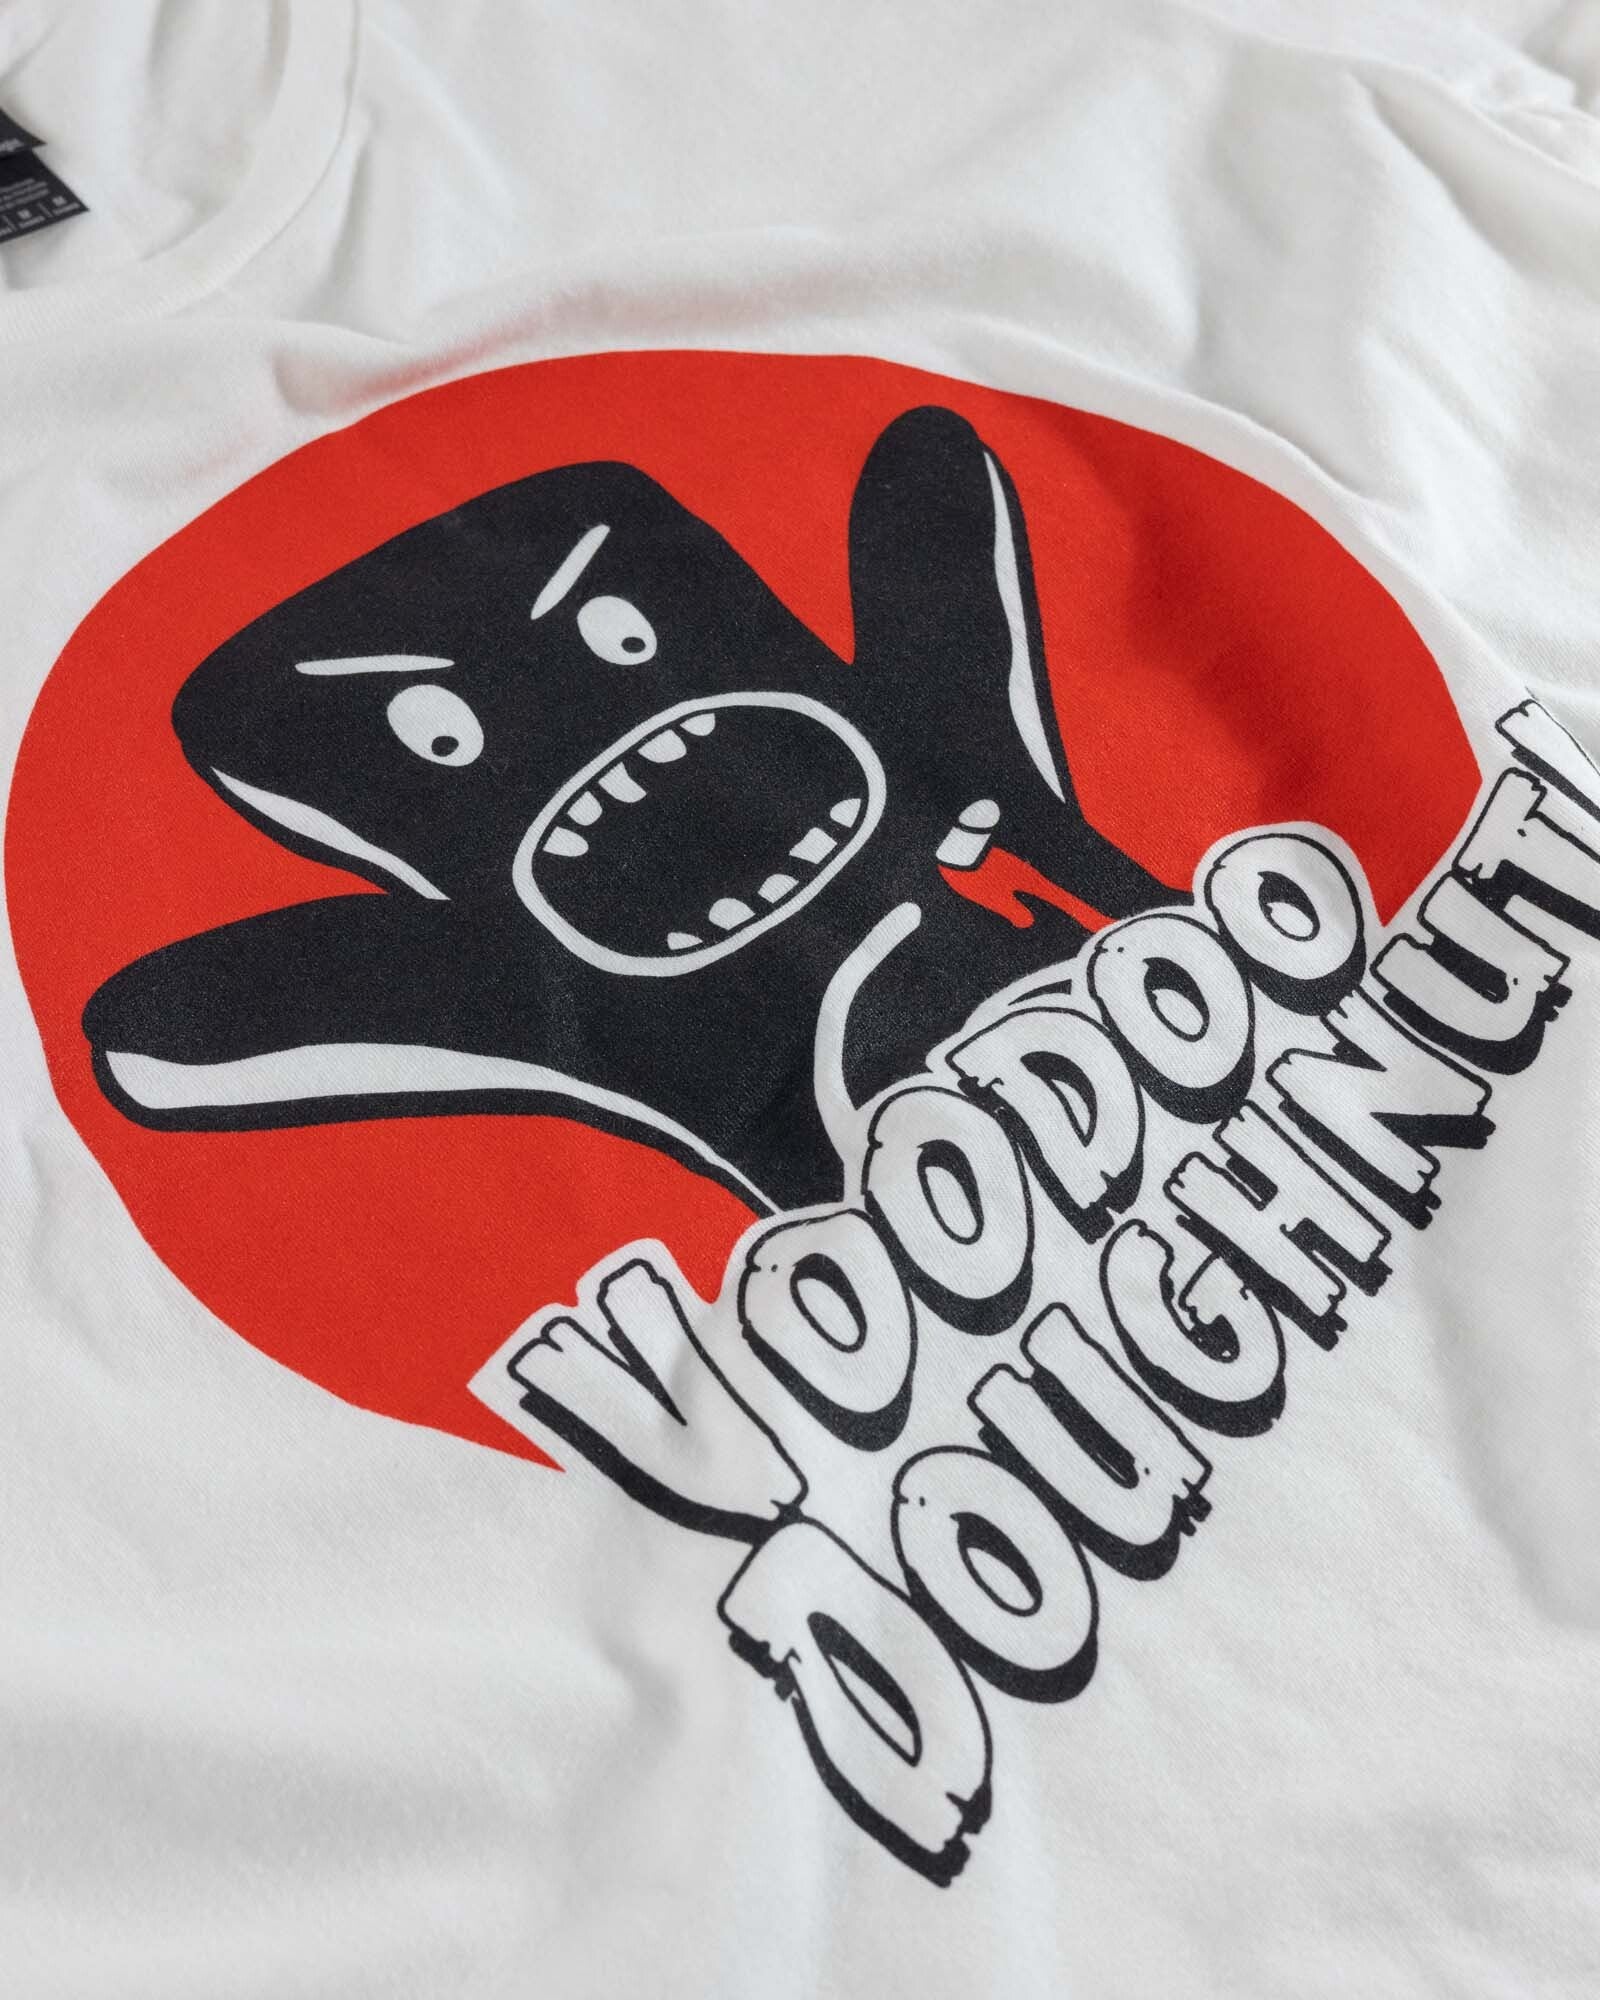 white voodoo doll t-shirt "Voodoo Doughnut"